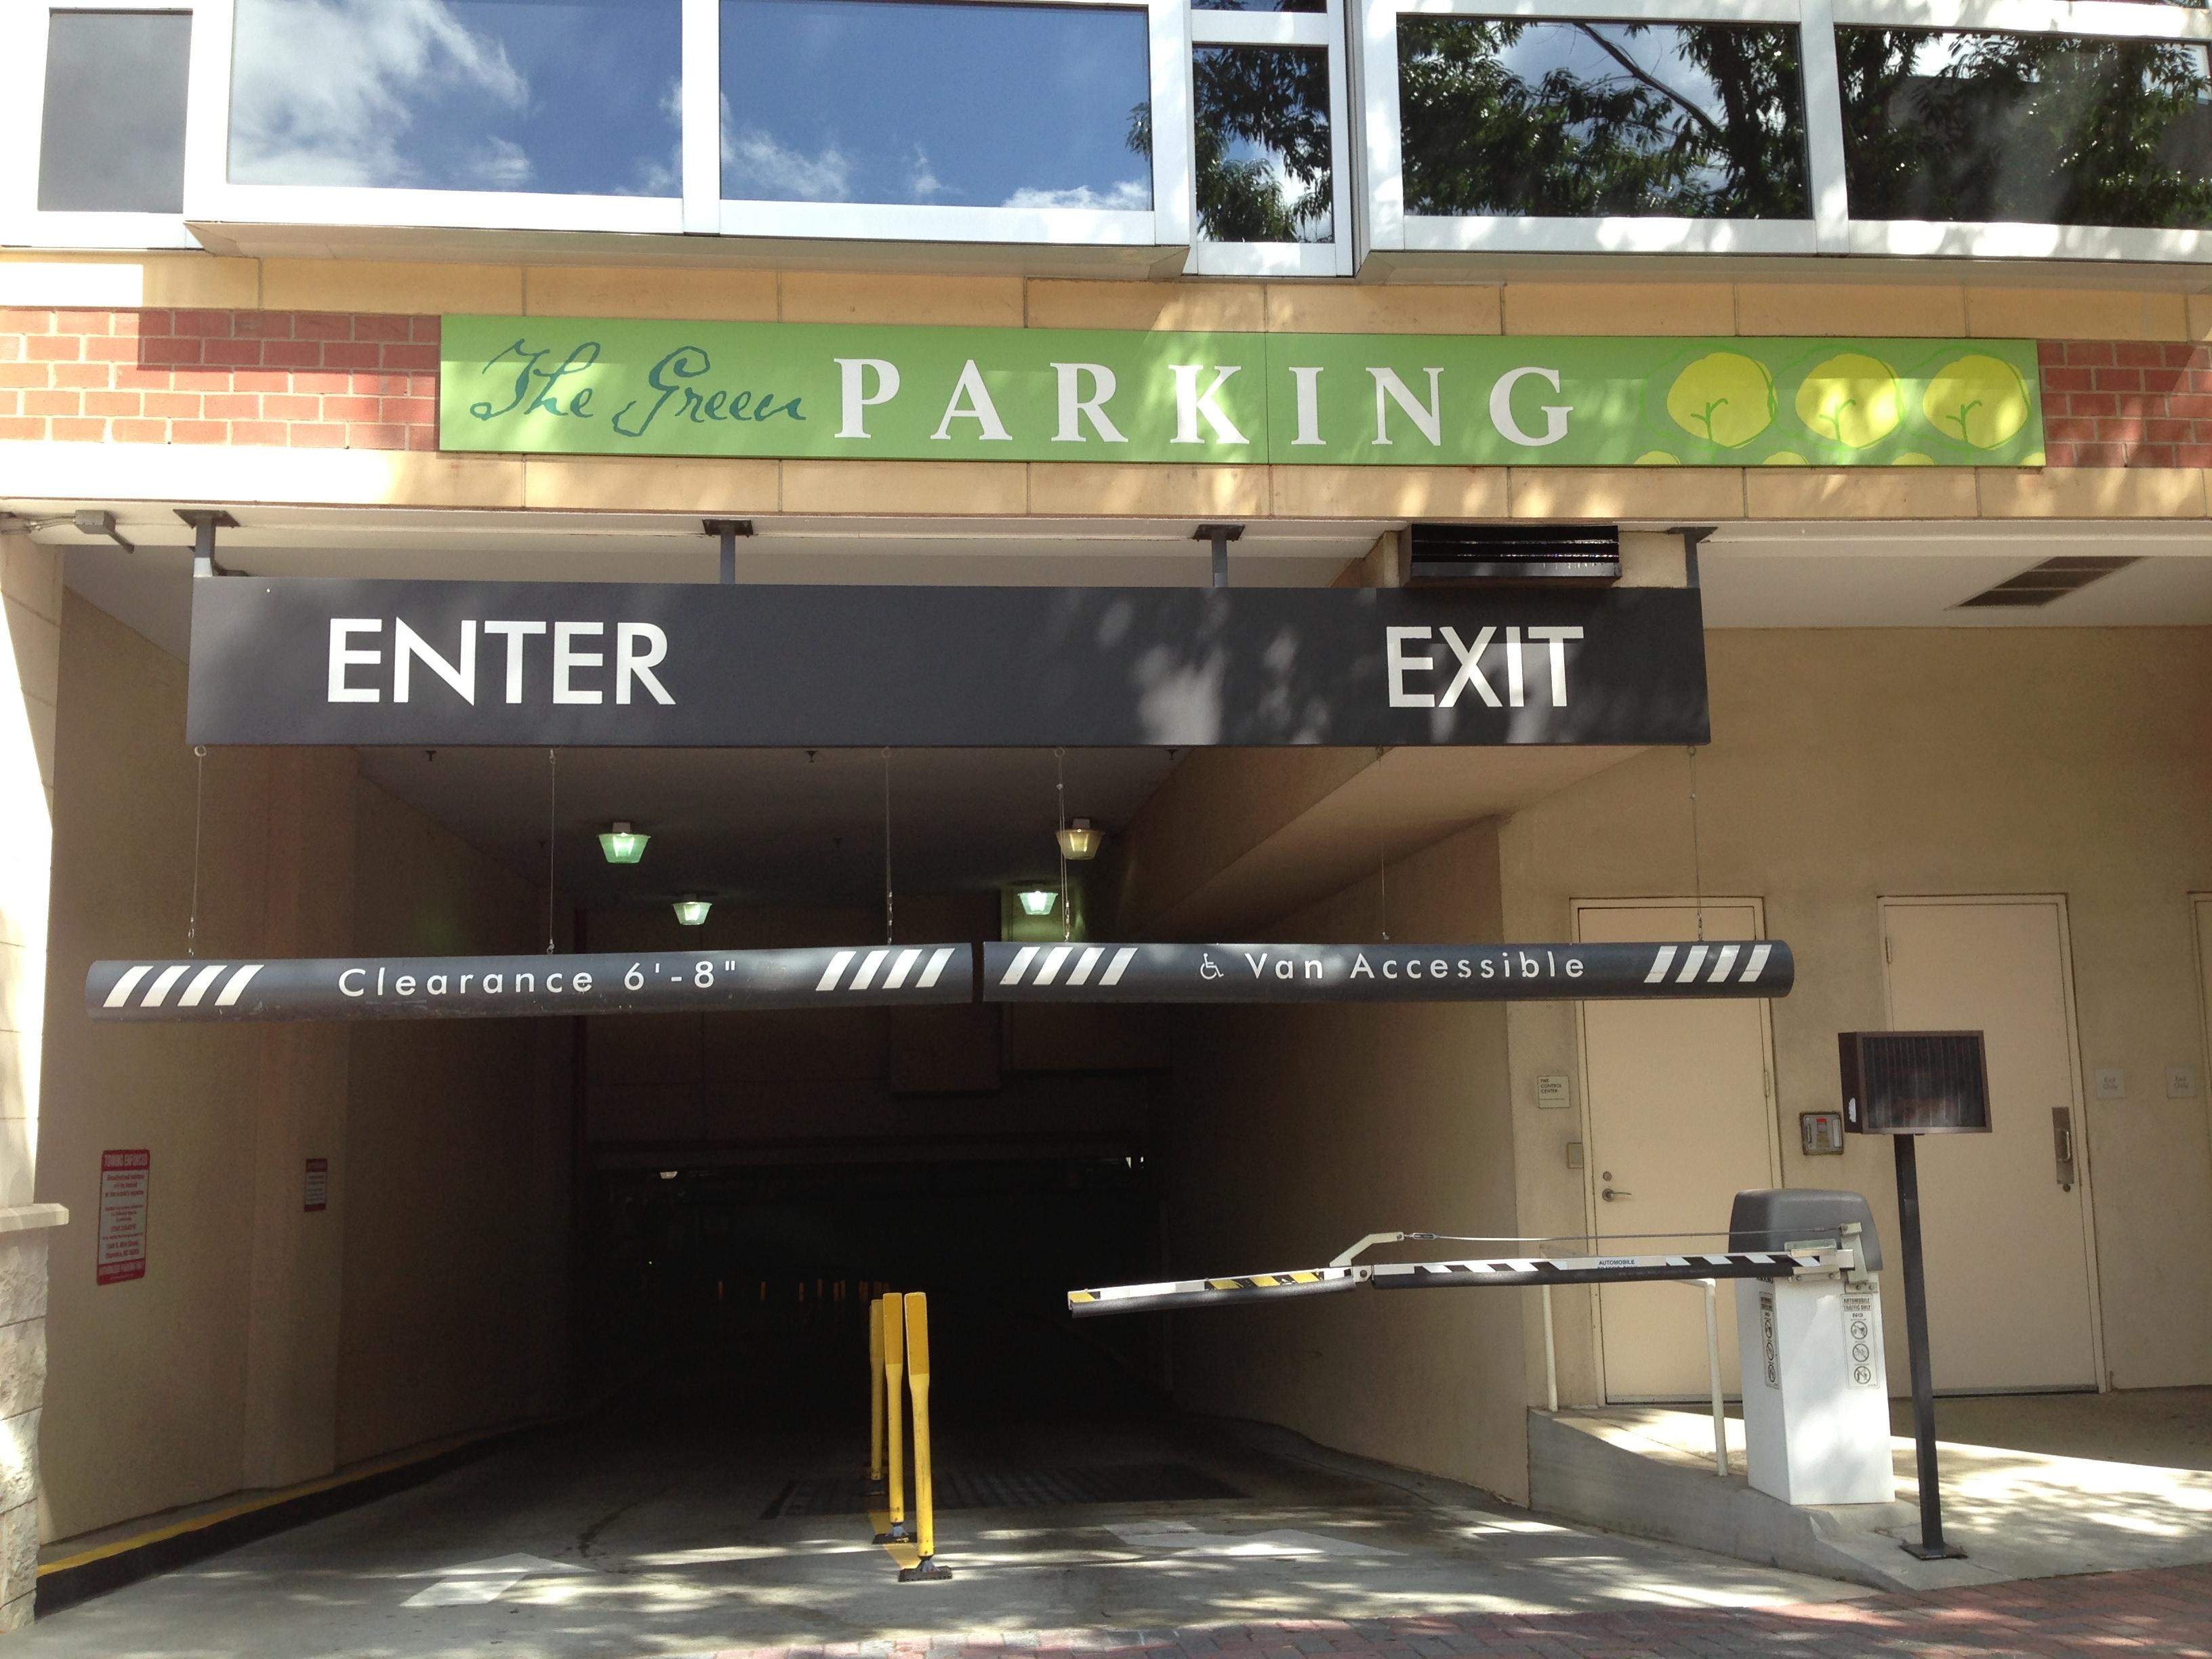 The Green Garage Parking